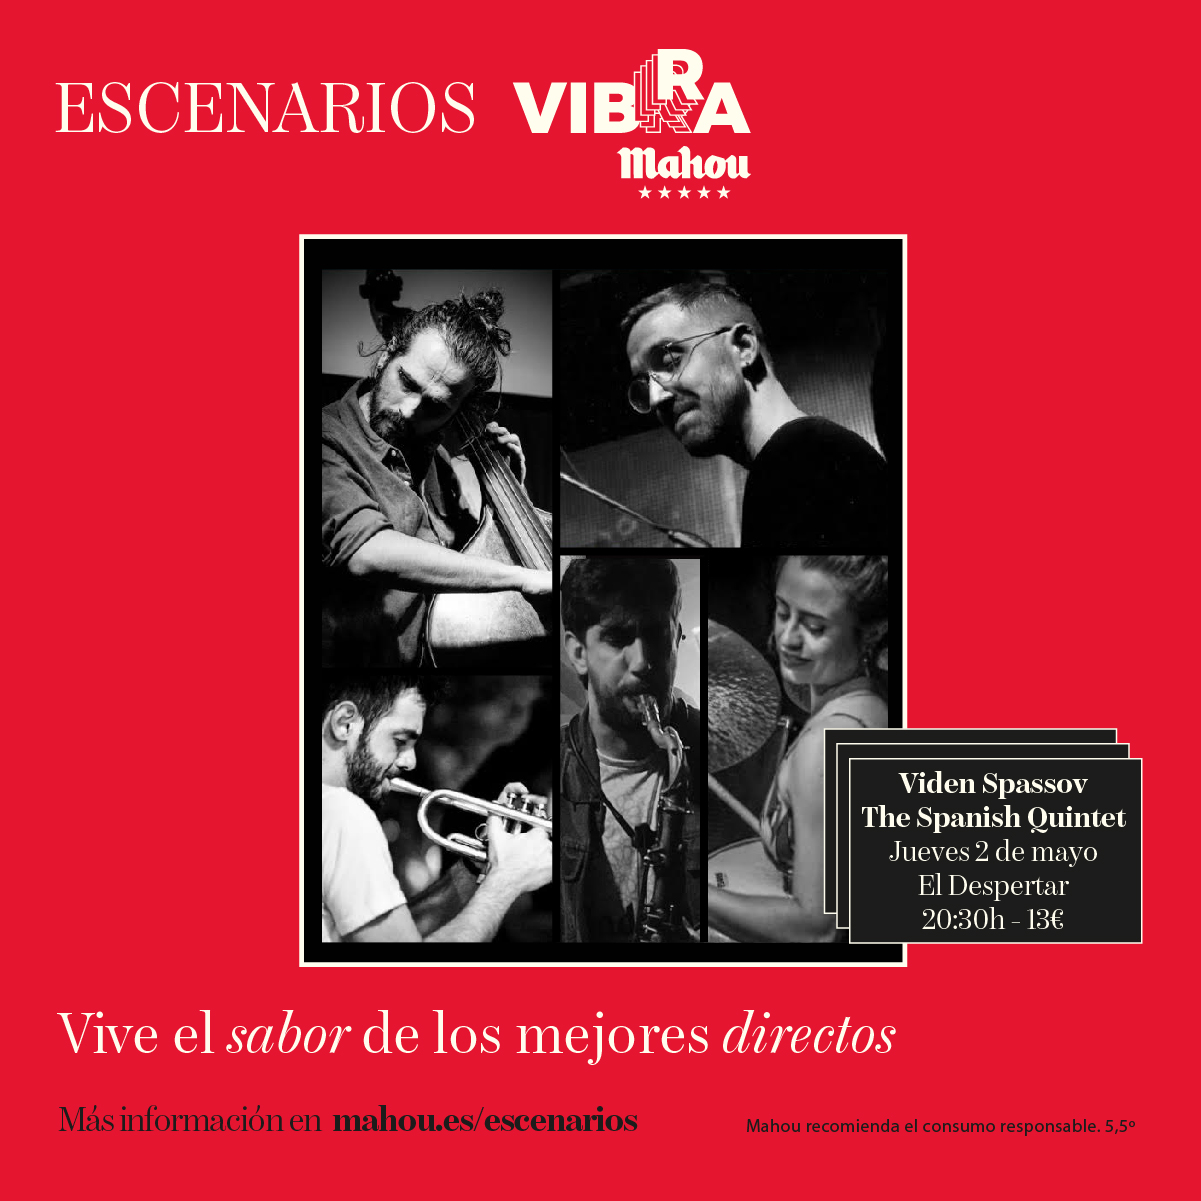 Escenarios Vibra Mahou ofrecerá hasta dieciséis conciertos durante el mes de mayo en las salas de Madrid